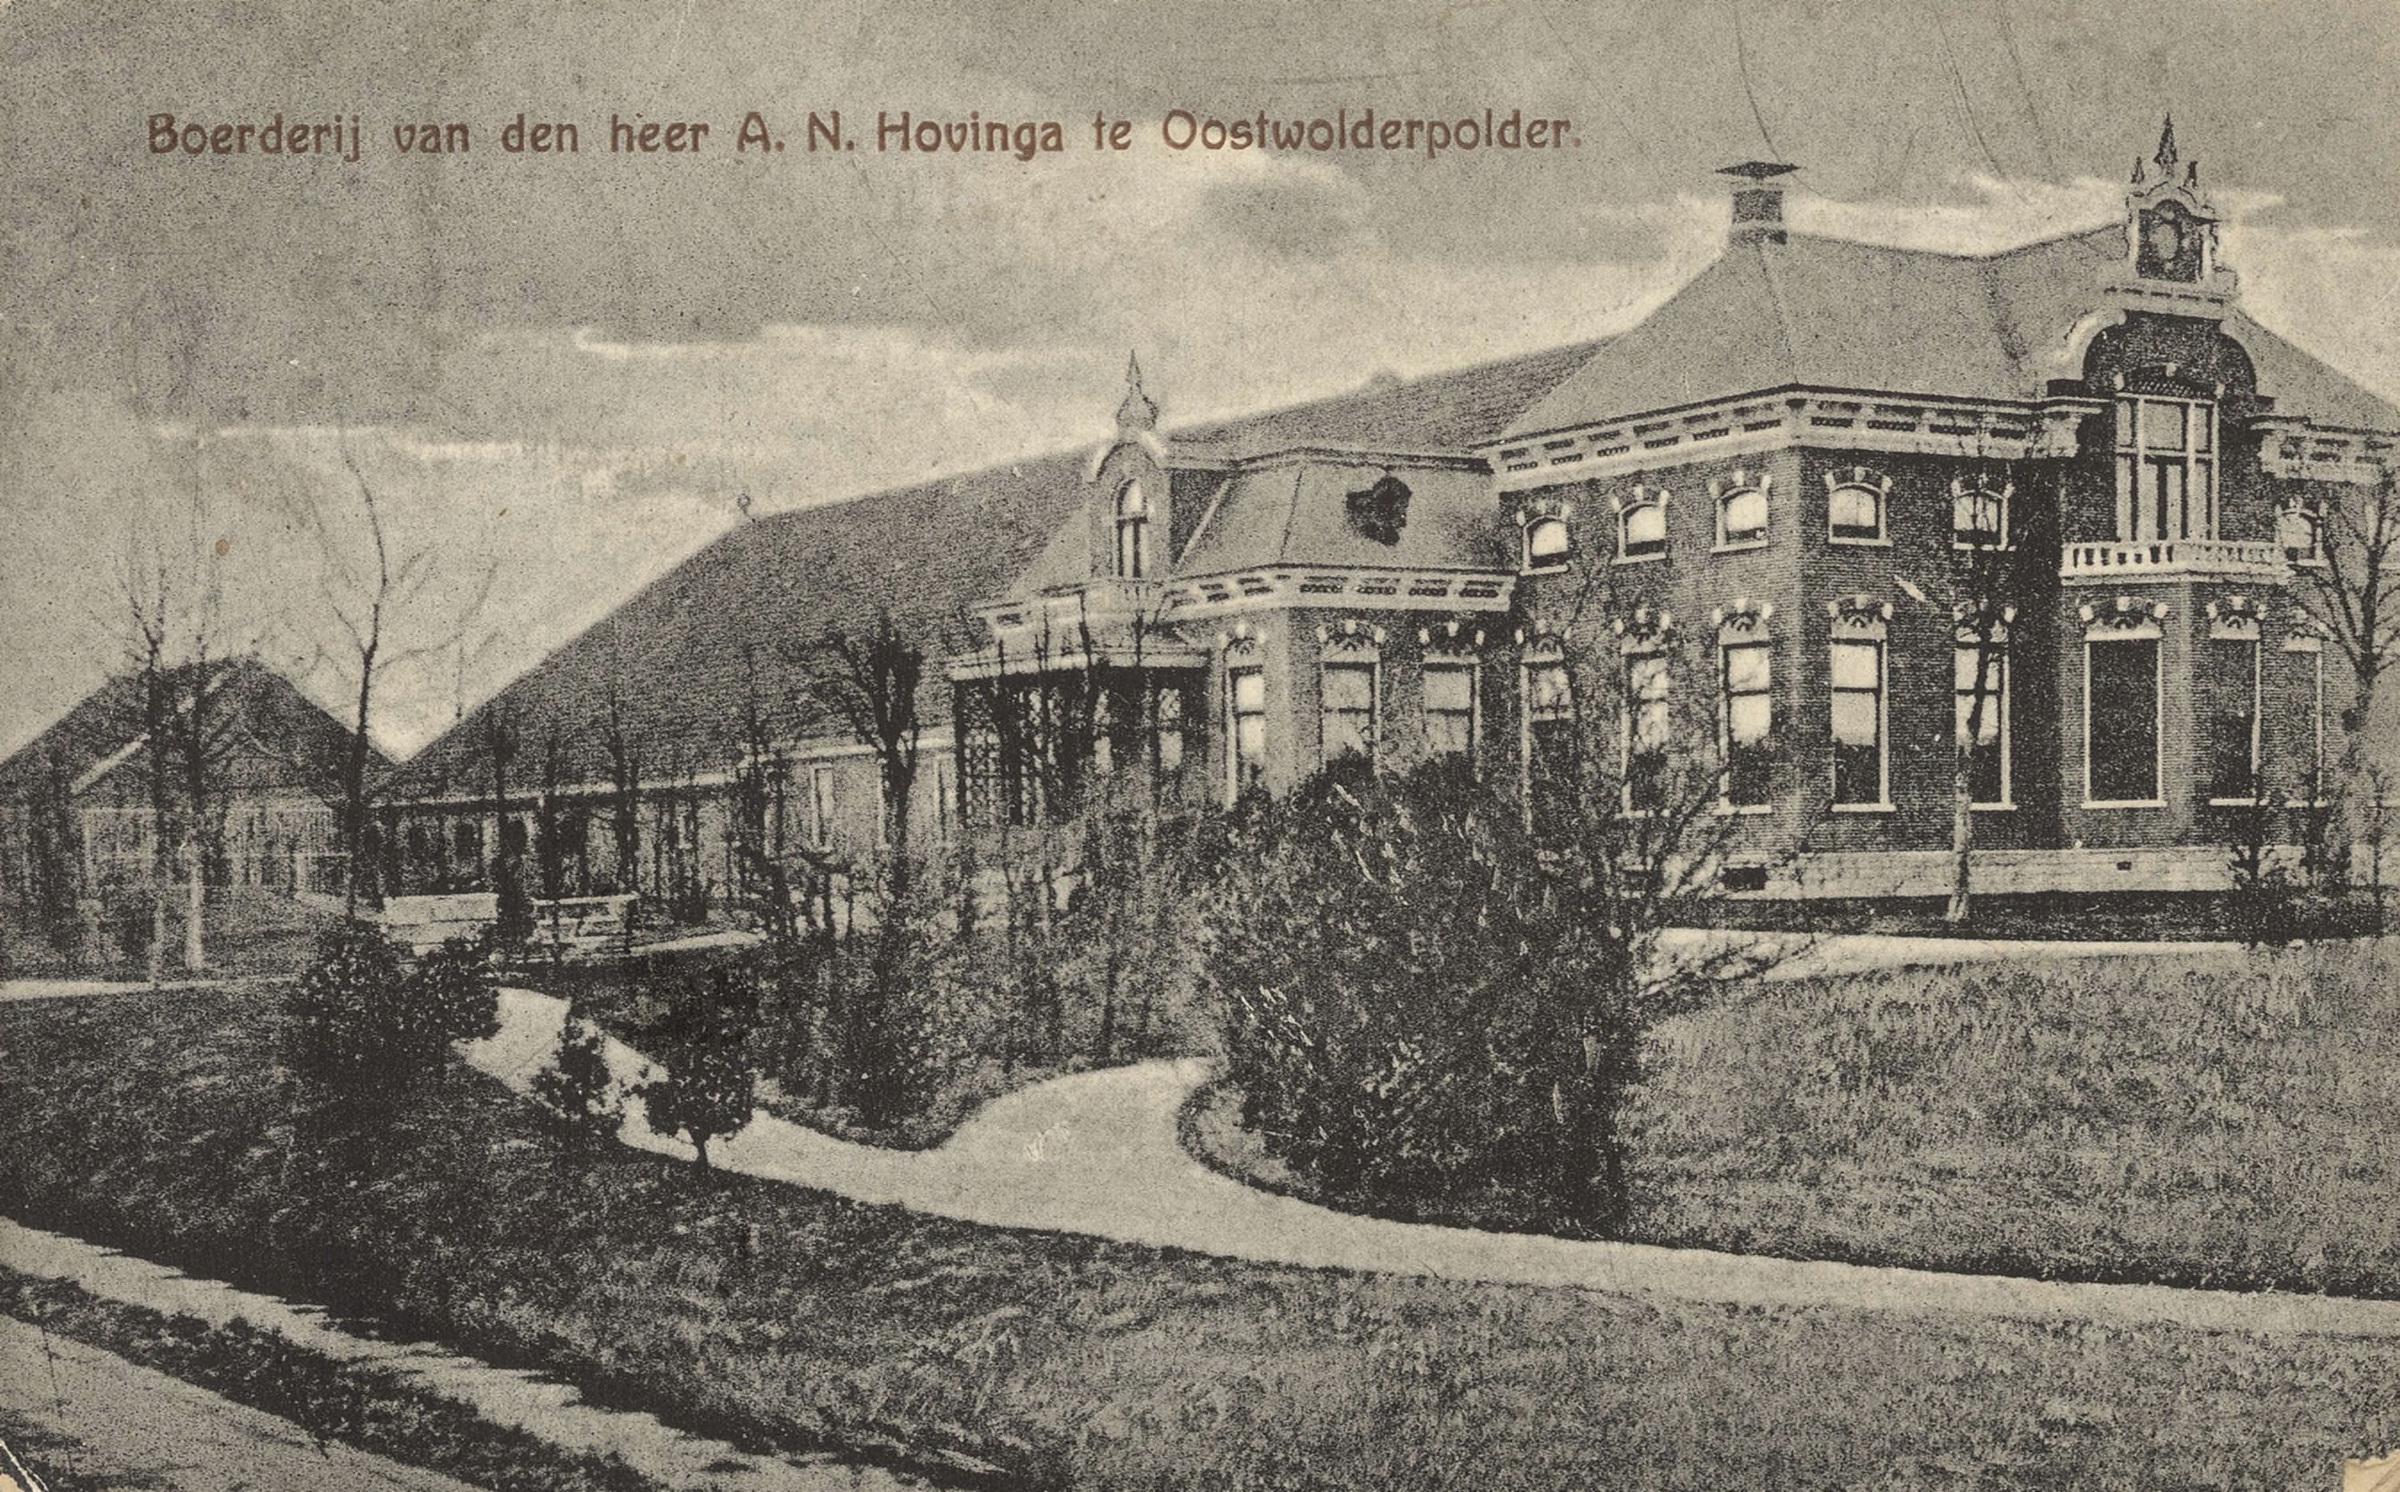 Ansichtkaart van de boerderij van de heer A.N. Hovinga in de Oostwolderpolder tussen 1915 en 1925 van de uitgever Z.J. Koning Gz. Bron: Beeldbank Groninger Archieven.